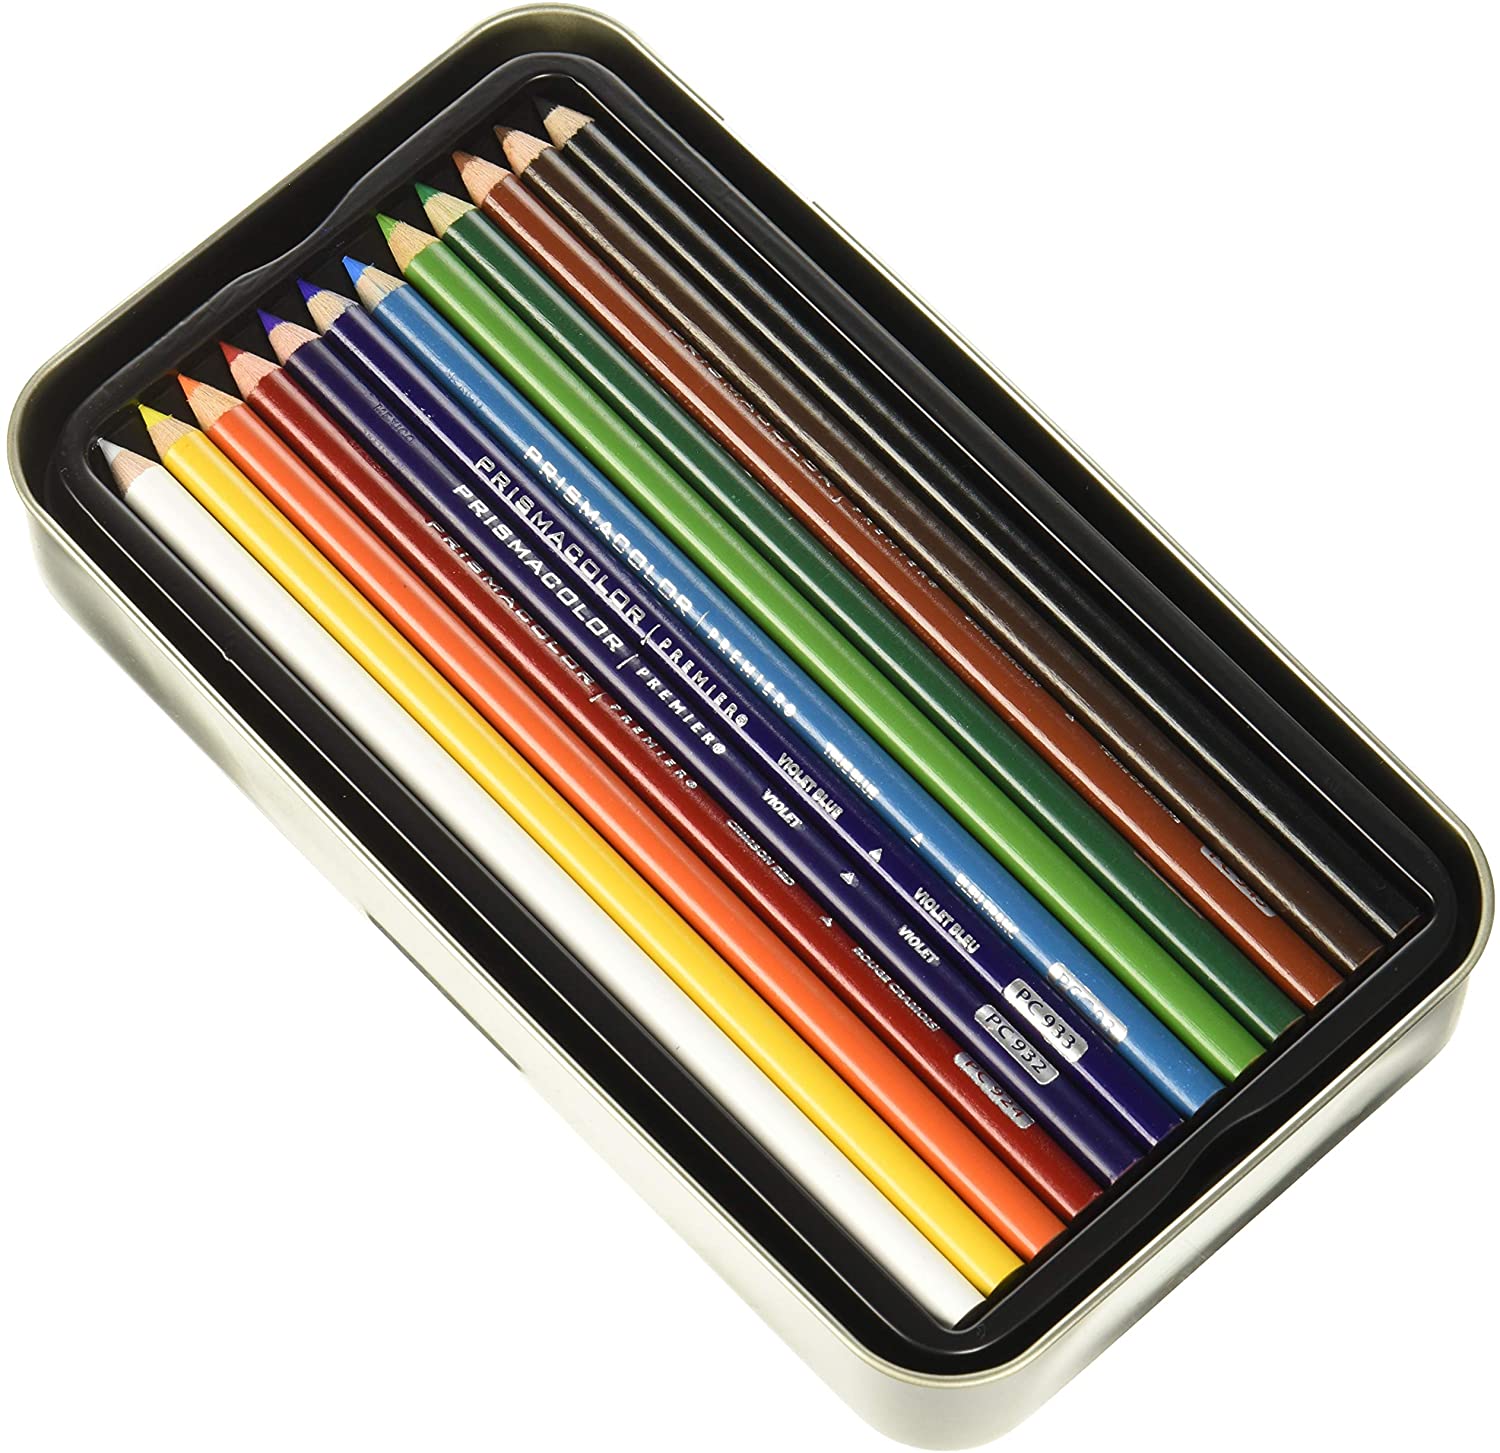 36 Pieces] Prismacolor Premier Soft Core Colored Pencils Set Professi